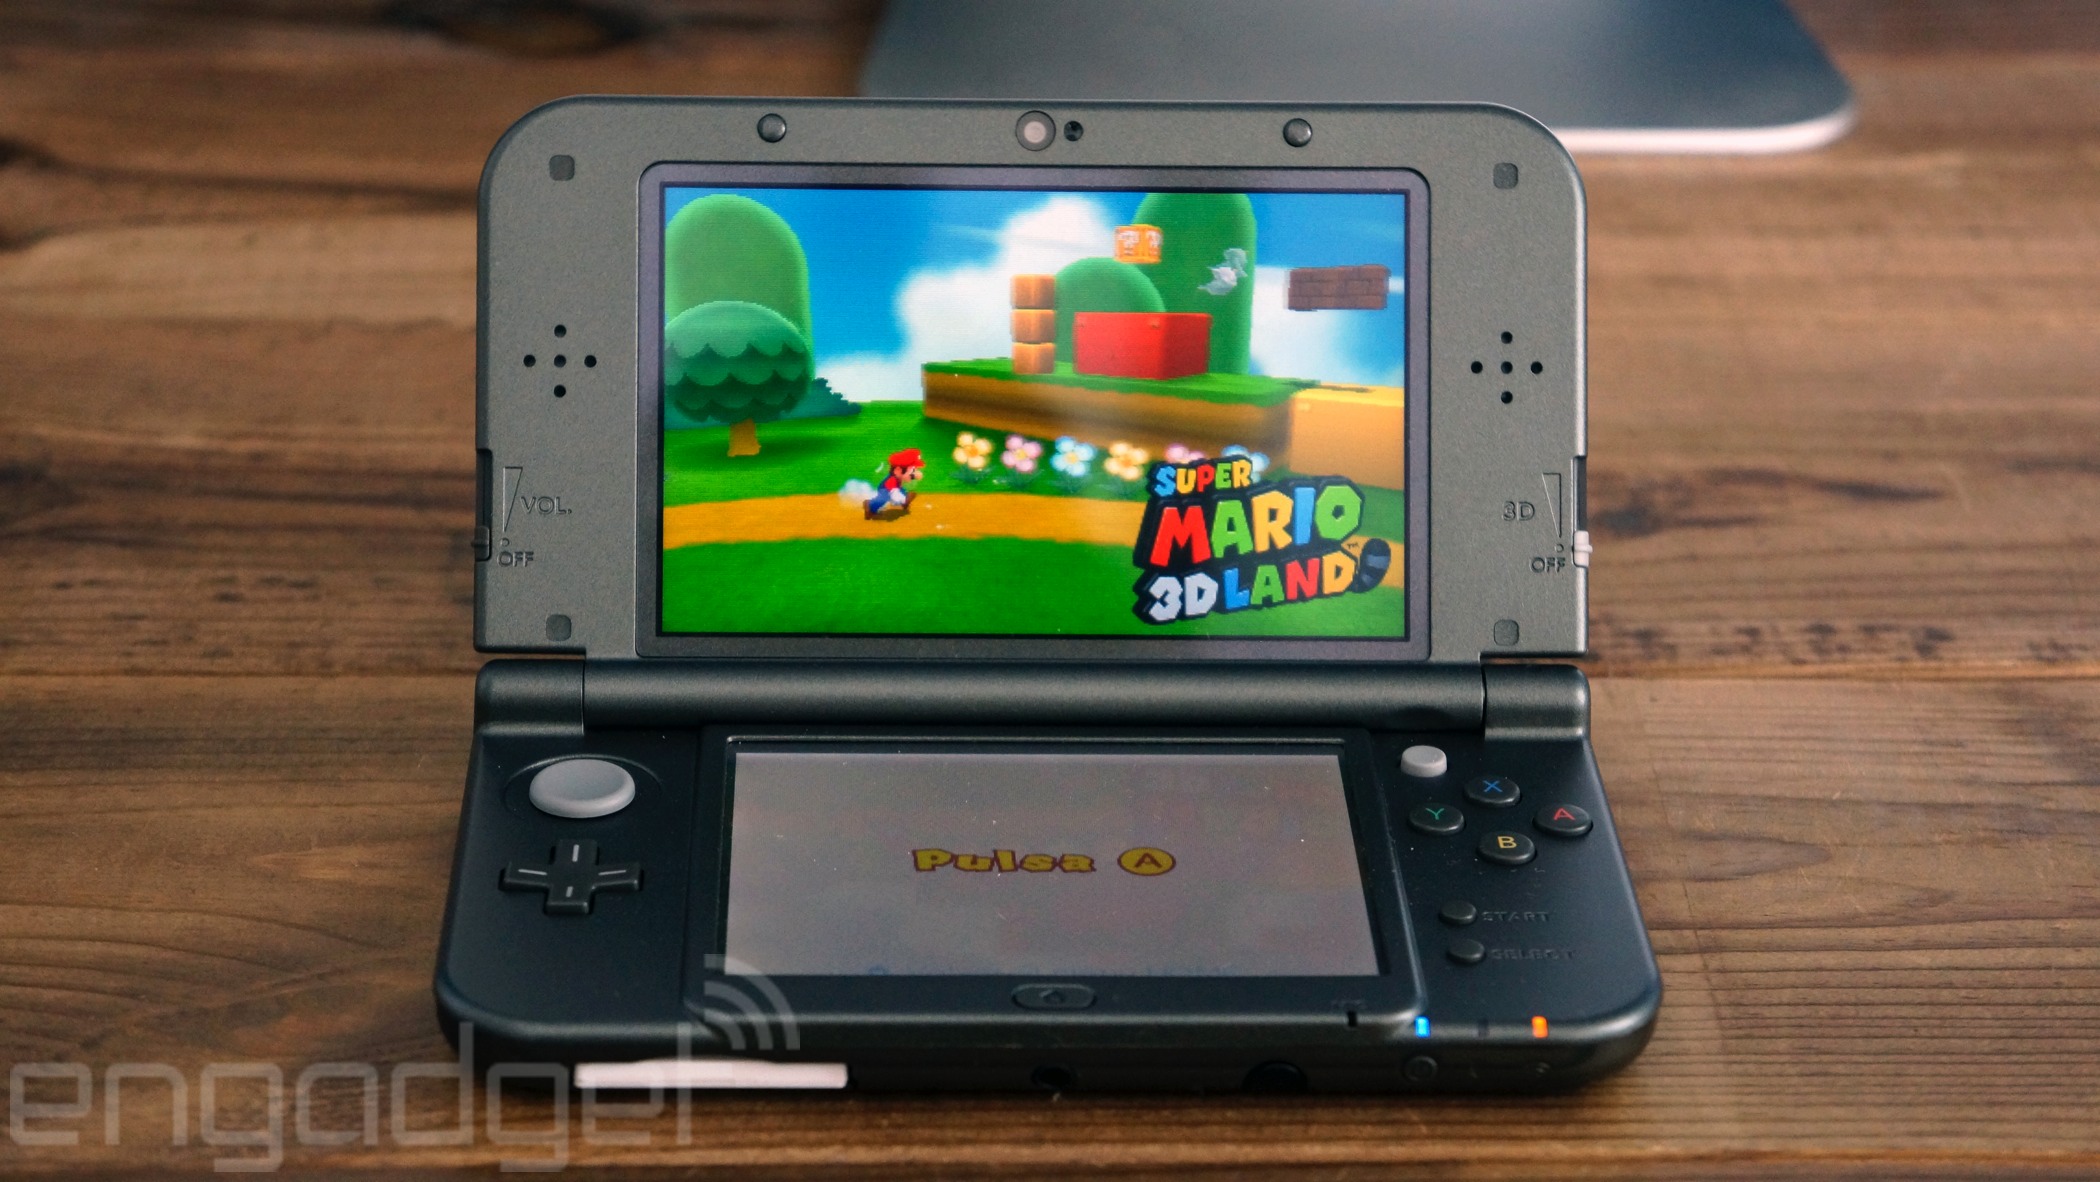 Correctamente Previamente Escuela primaria El mejor 3D llega con la New Nintendo 3DS | Engadget